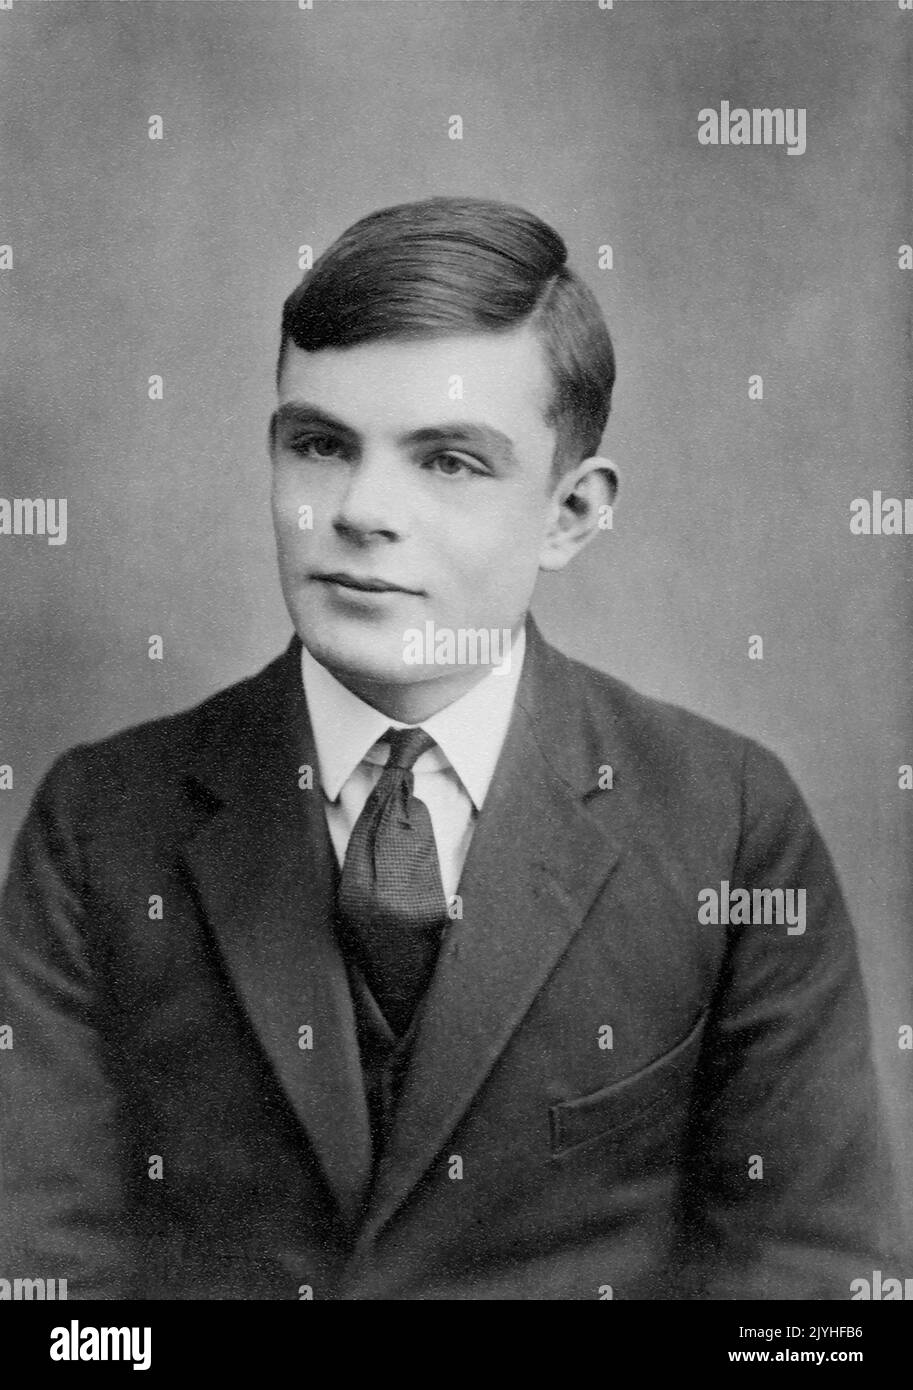 Gran Bretaña / Reino Unido: Alan Turing (1912-1954), científico informático y criptólogo instrumental en romper el código de máquina 'enigma' de Alemania durante la Segunda Guerra Mundial, c. 1928. Alan Mathison Turing fue un científico informático pionero británico, matemático, lógico, criptoanalista, filósofo, biólogo matemático y corredor de maratón y ultra distancia. Fue muy influyente en el desarrollo de la informática. Foto de stock